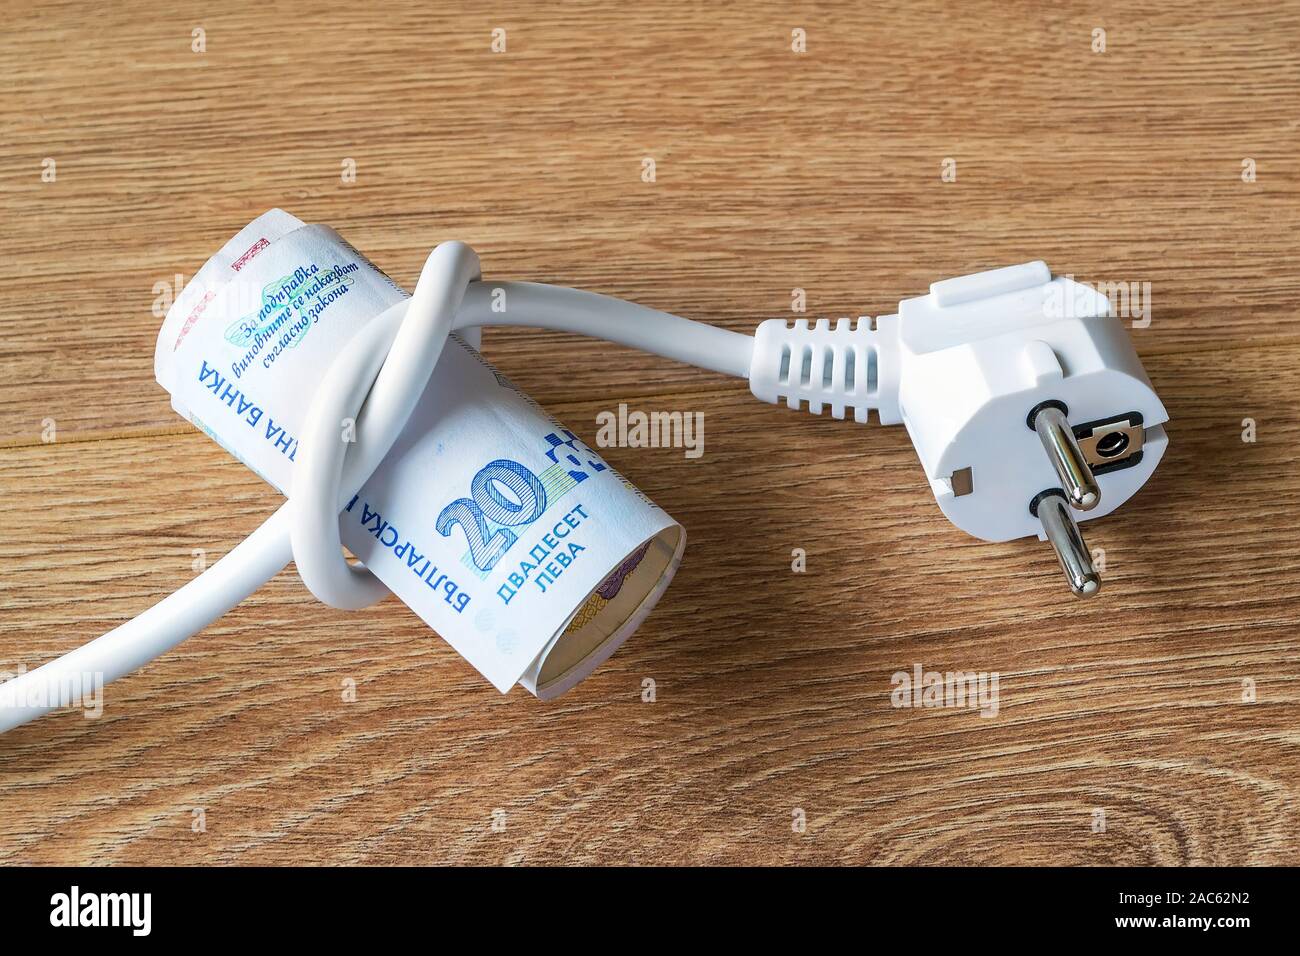 Câble électrique avec fiche lié à un noeud sur un rouleau de lev bulgare  des billets en euros. Coût de l'électricité et l'énergie coûteuse des  concepts. Sur une surface en bois Photo